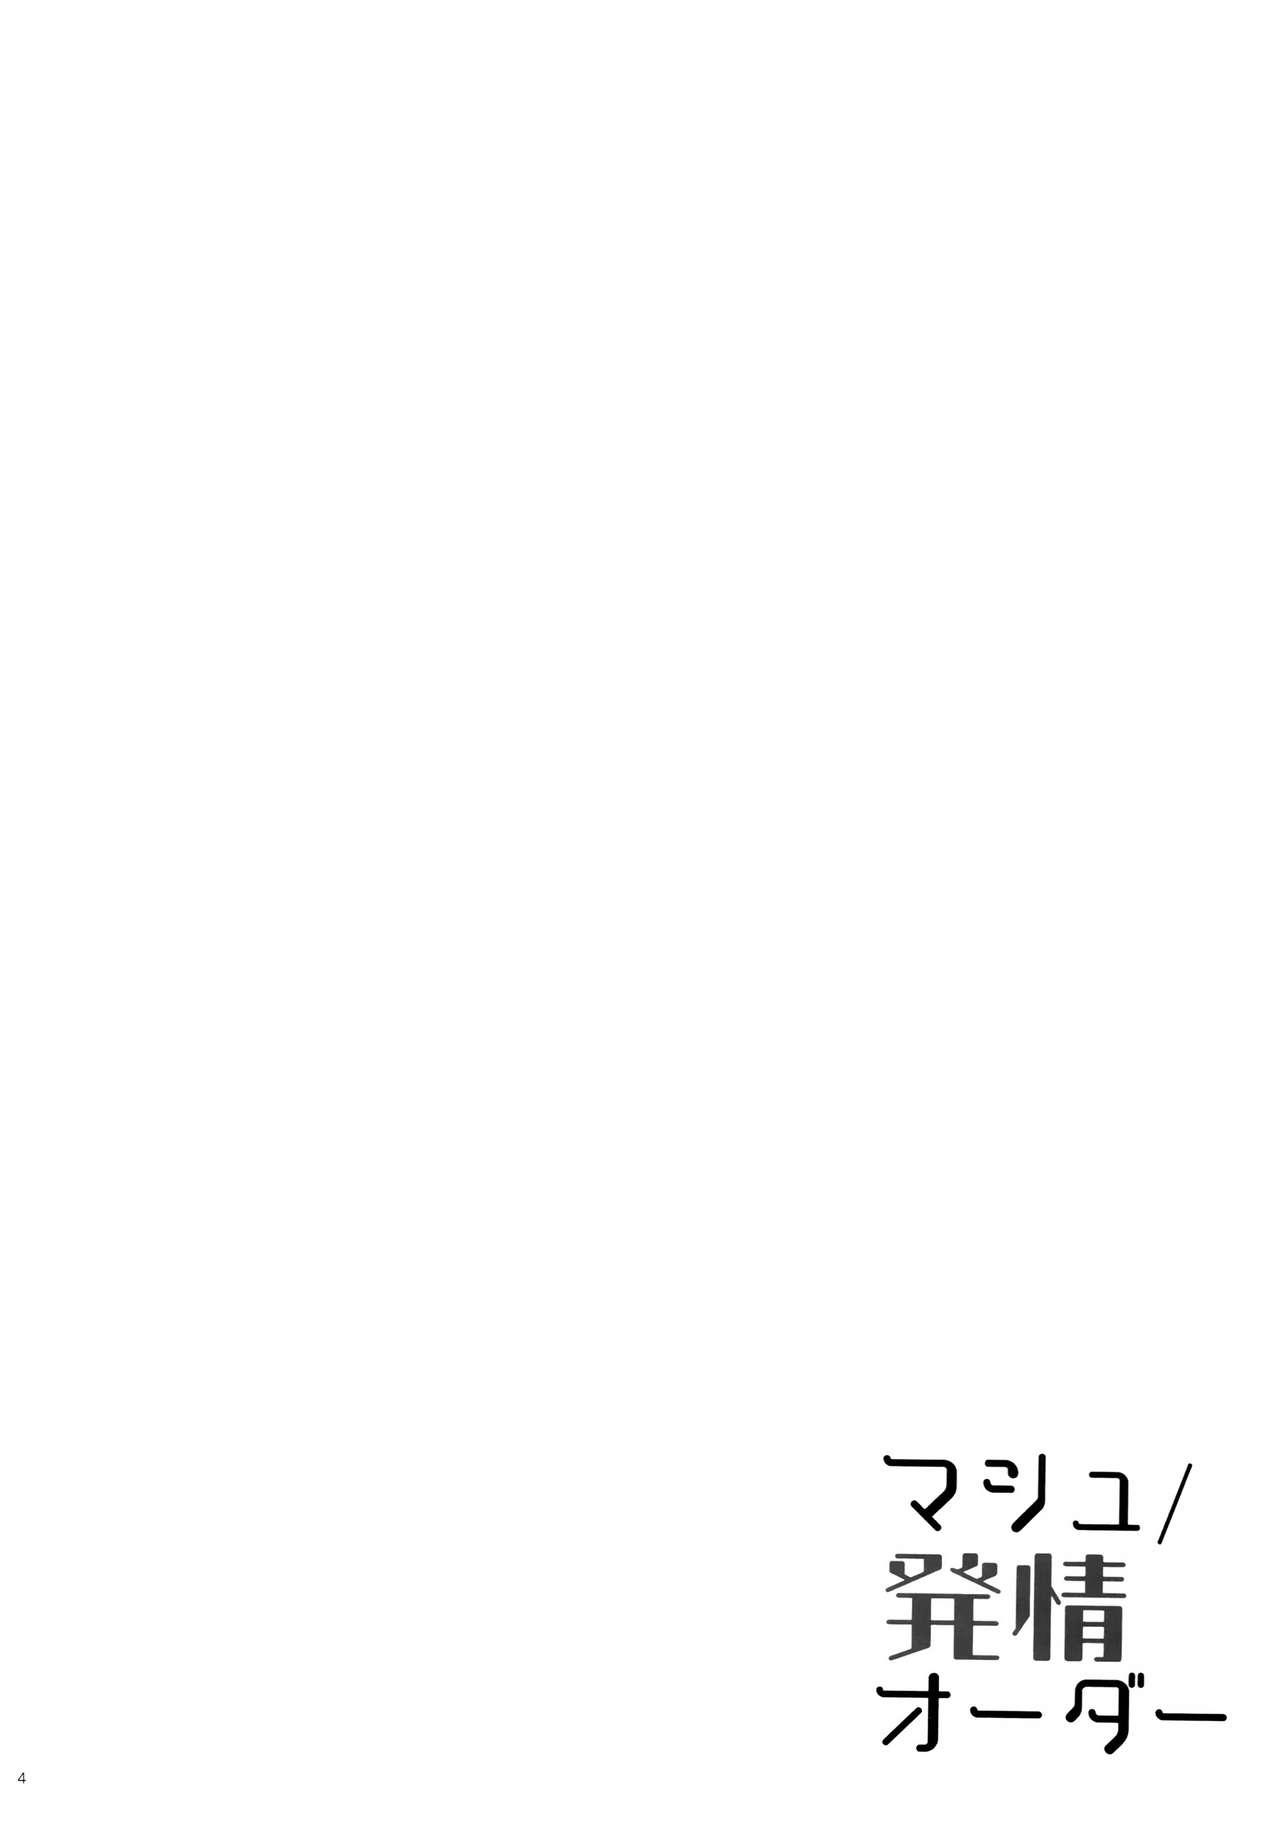 マシュ/発情オーダー(C92) [moco chouchou (ひさまくまこ)]  (Fate/Grand Order) [中国翻訳](24页)